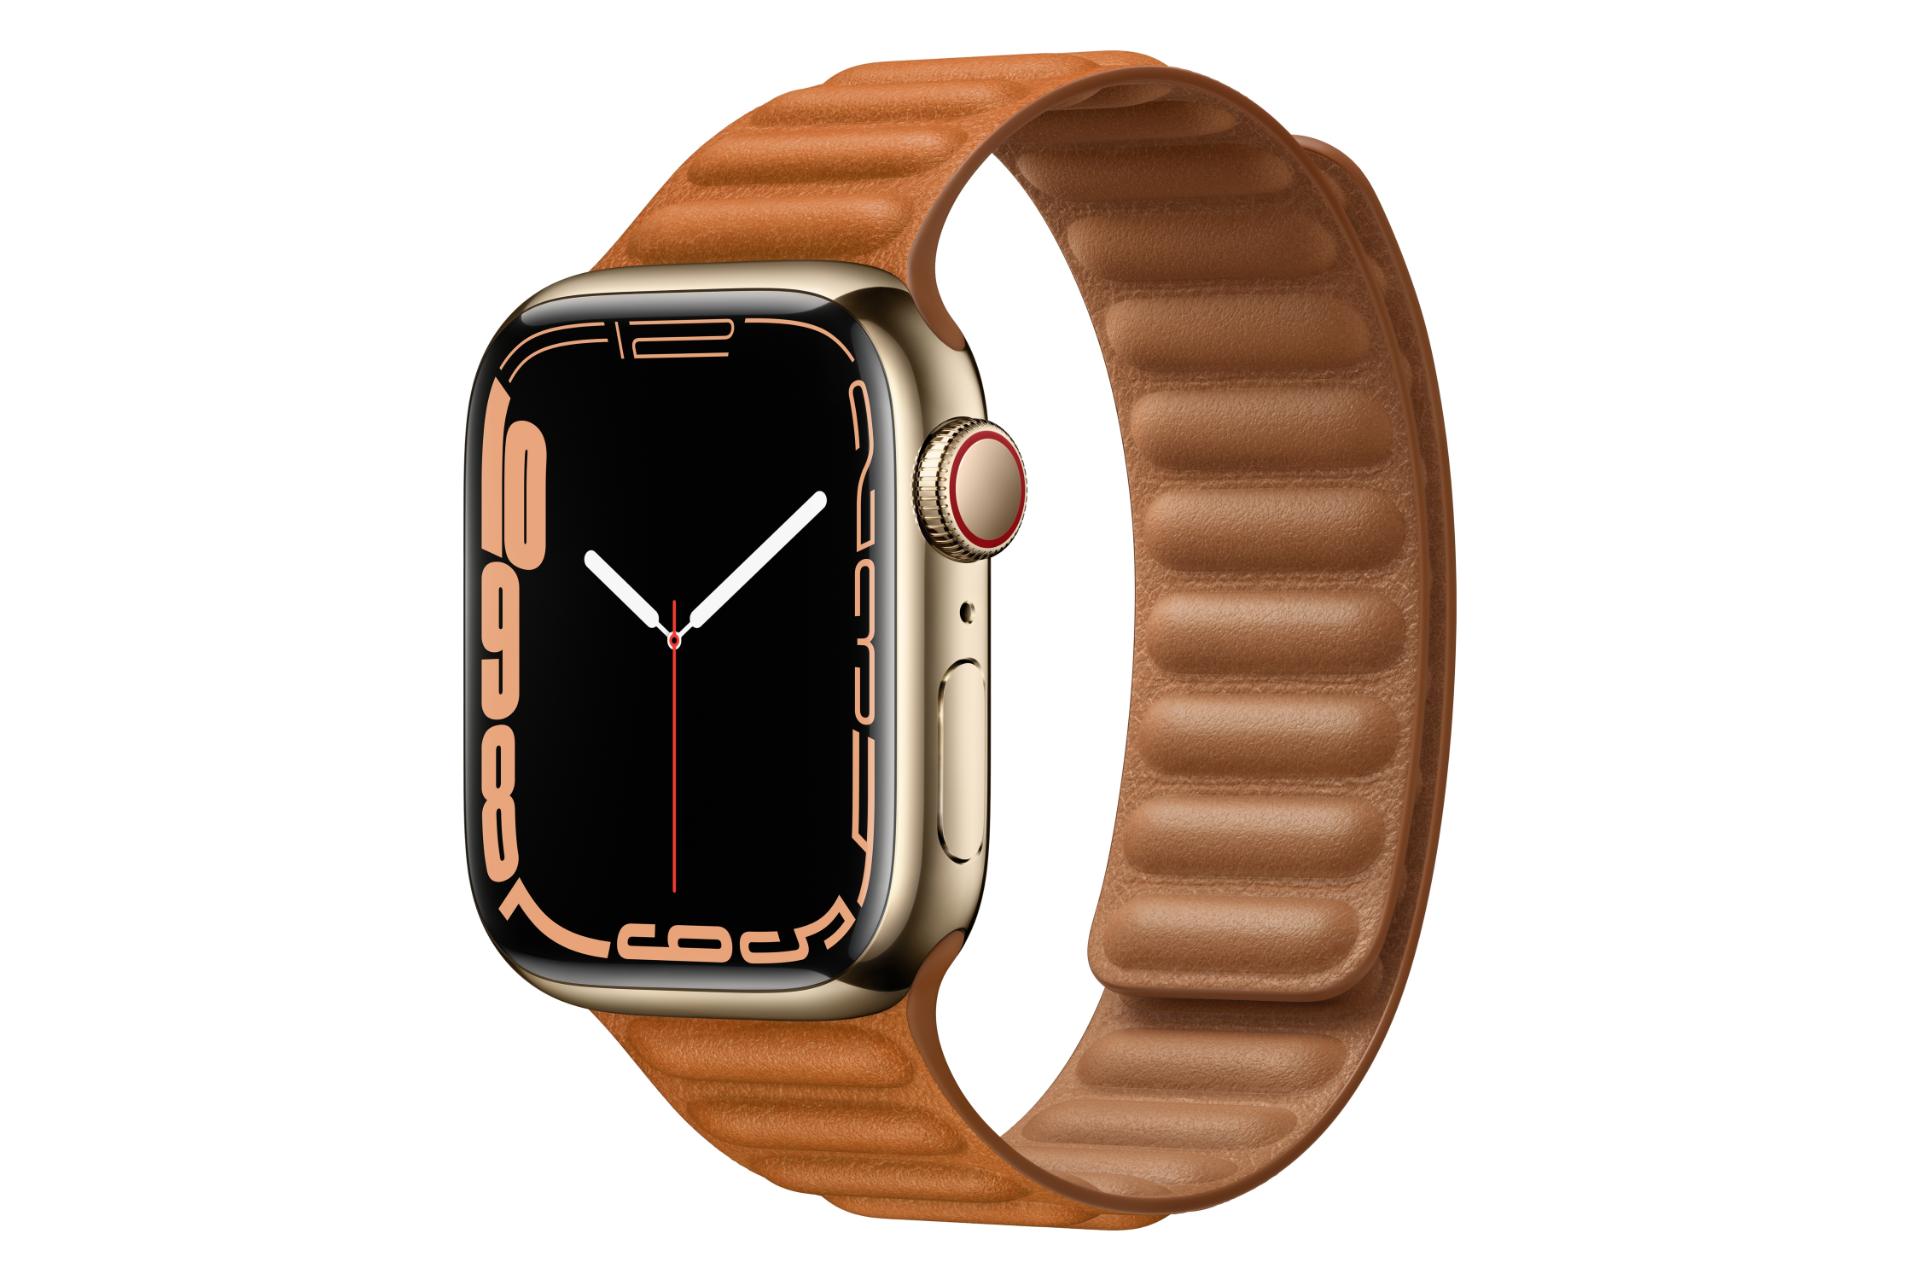 مرجع متخصصين ايران اپل واچ سري 7 استيل / Apple Watch Series 7 Stainless Steel طلايي